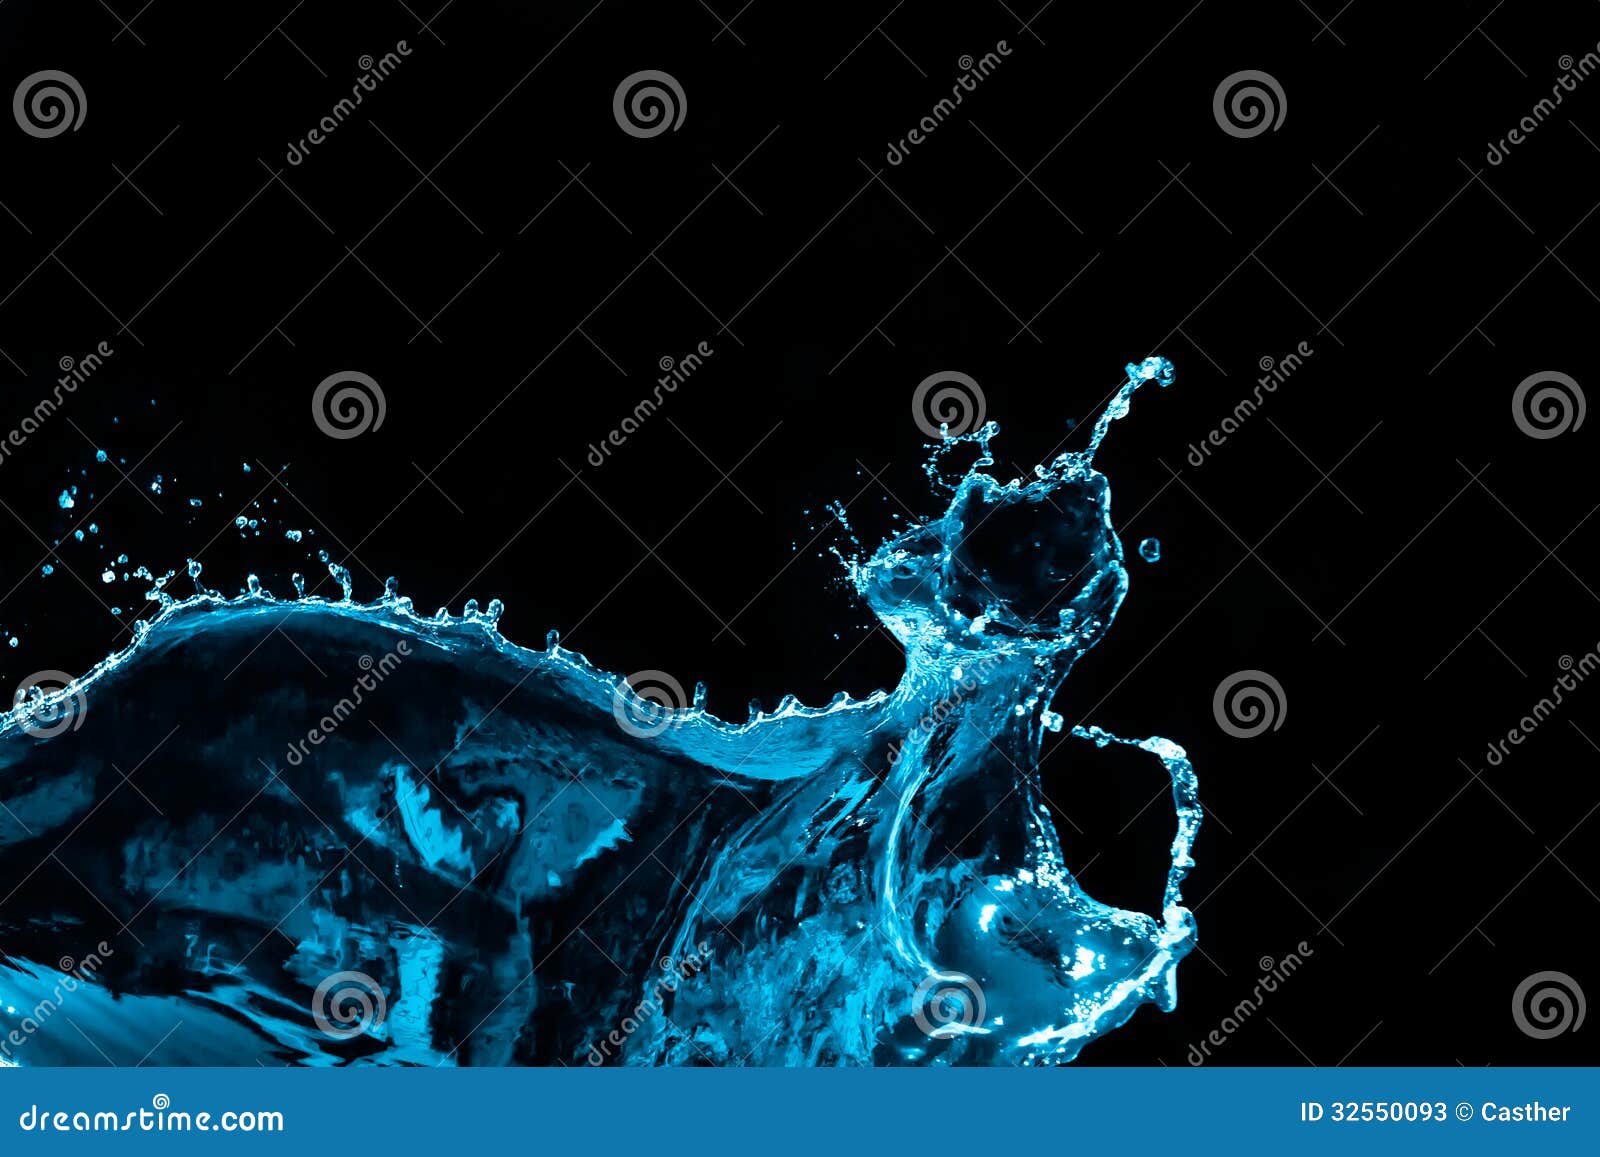 Water Splash Isolated on Black Background Stock Image - Image of impact,  backdrop: 32550093